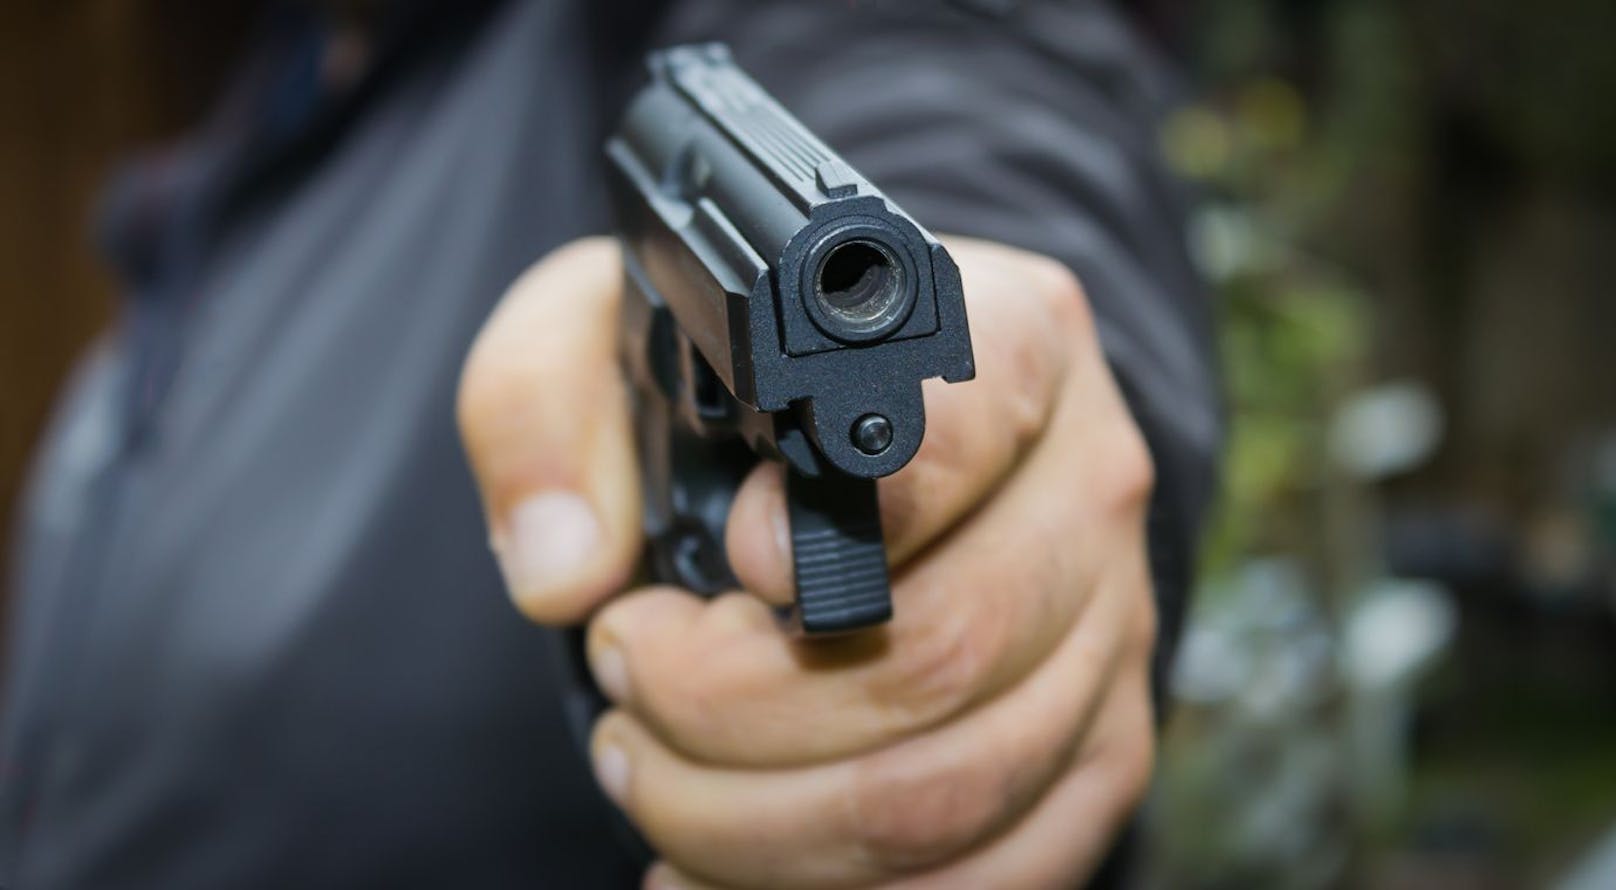 Ein 25-Jähriger soll in Streit auf seinen Kontrahenten geschossen haben. Symbolbild